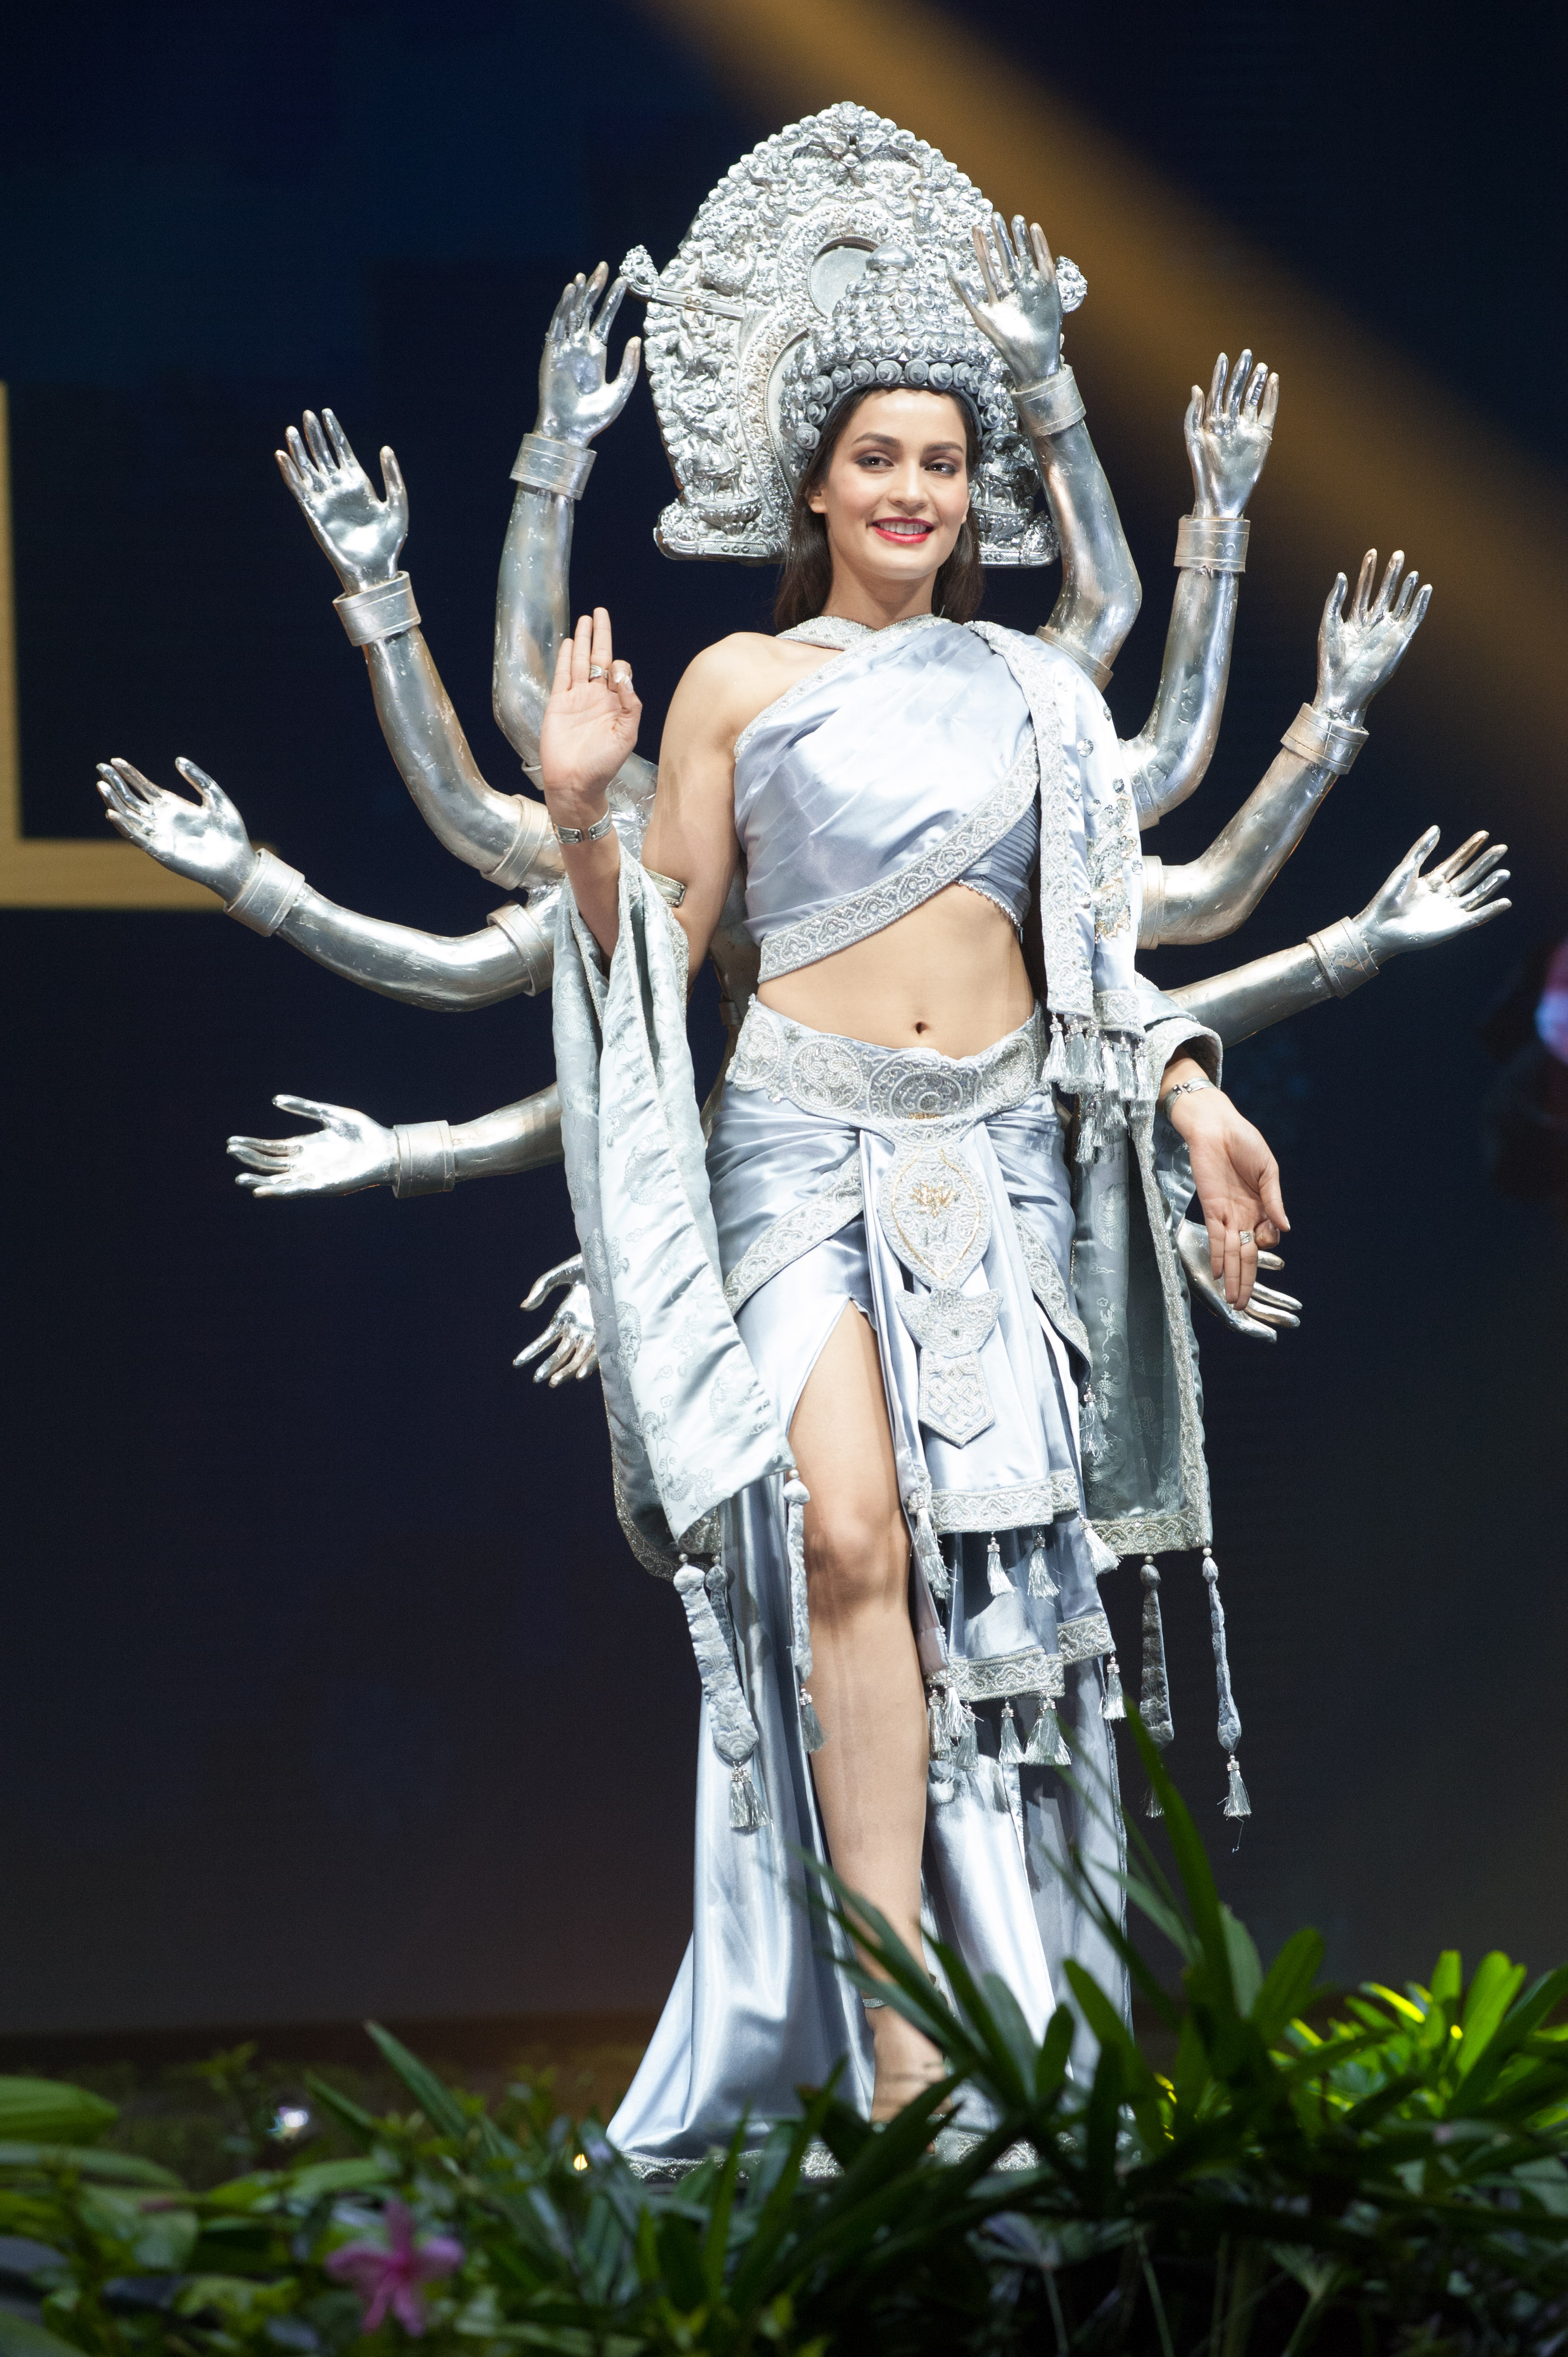 Manita Devkota, Miss Nepal 2018 